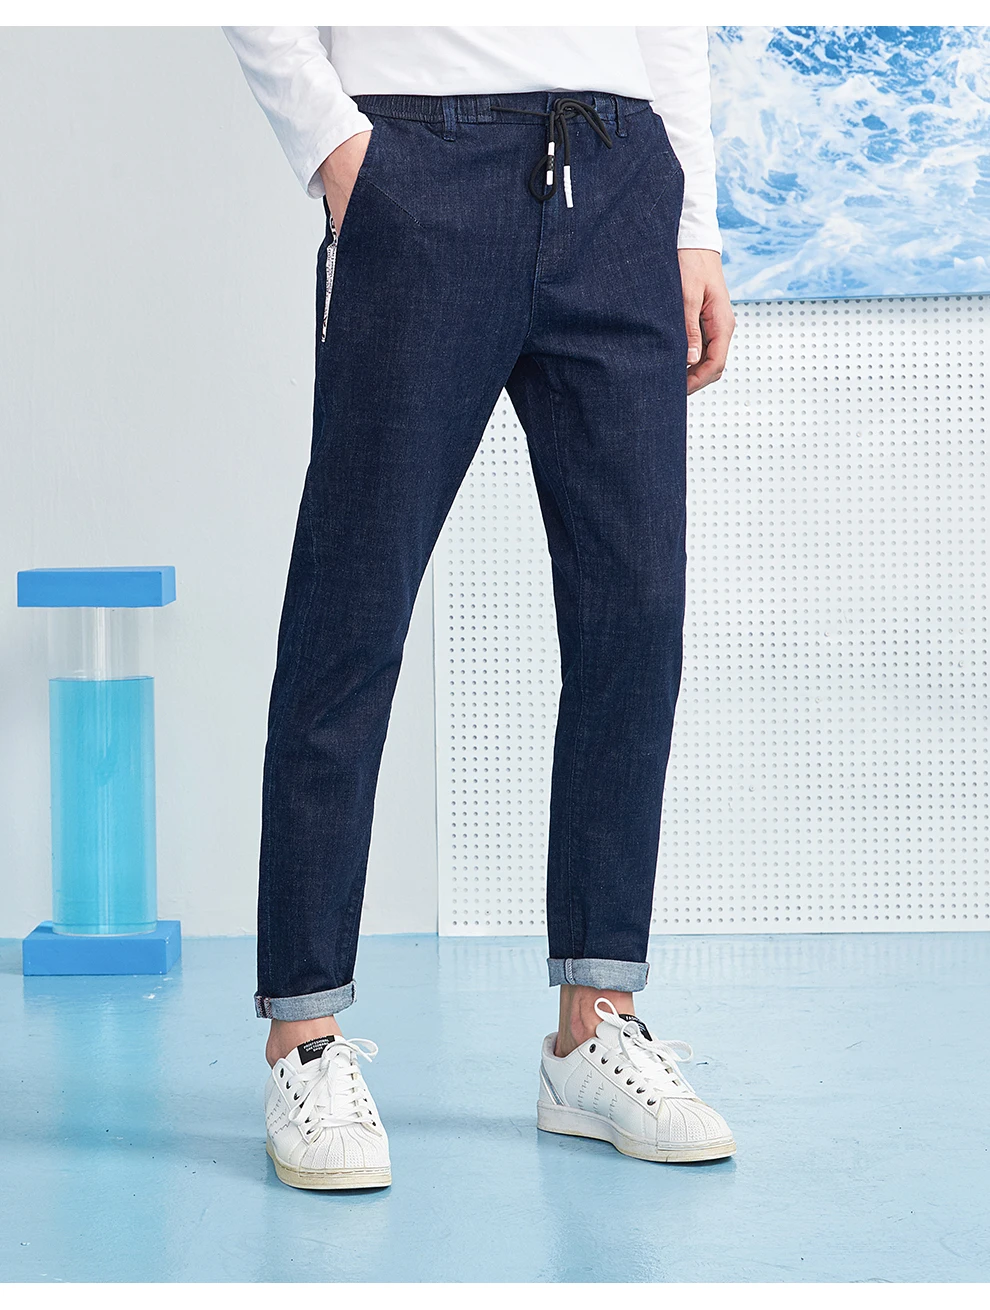 Пионерский лагерь Новые джинсы Штаны Мужская брендовая одежда дизайн лямки модные брюки для мужчин качество джинсы мужской синий ANZ803106